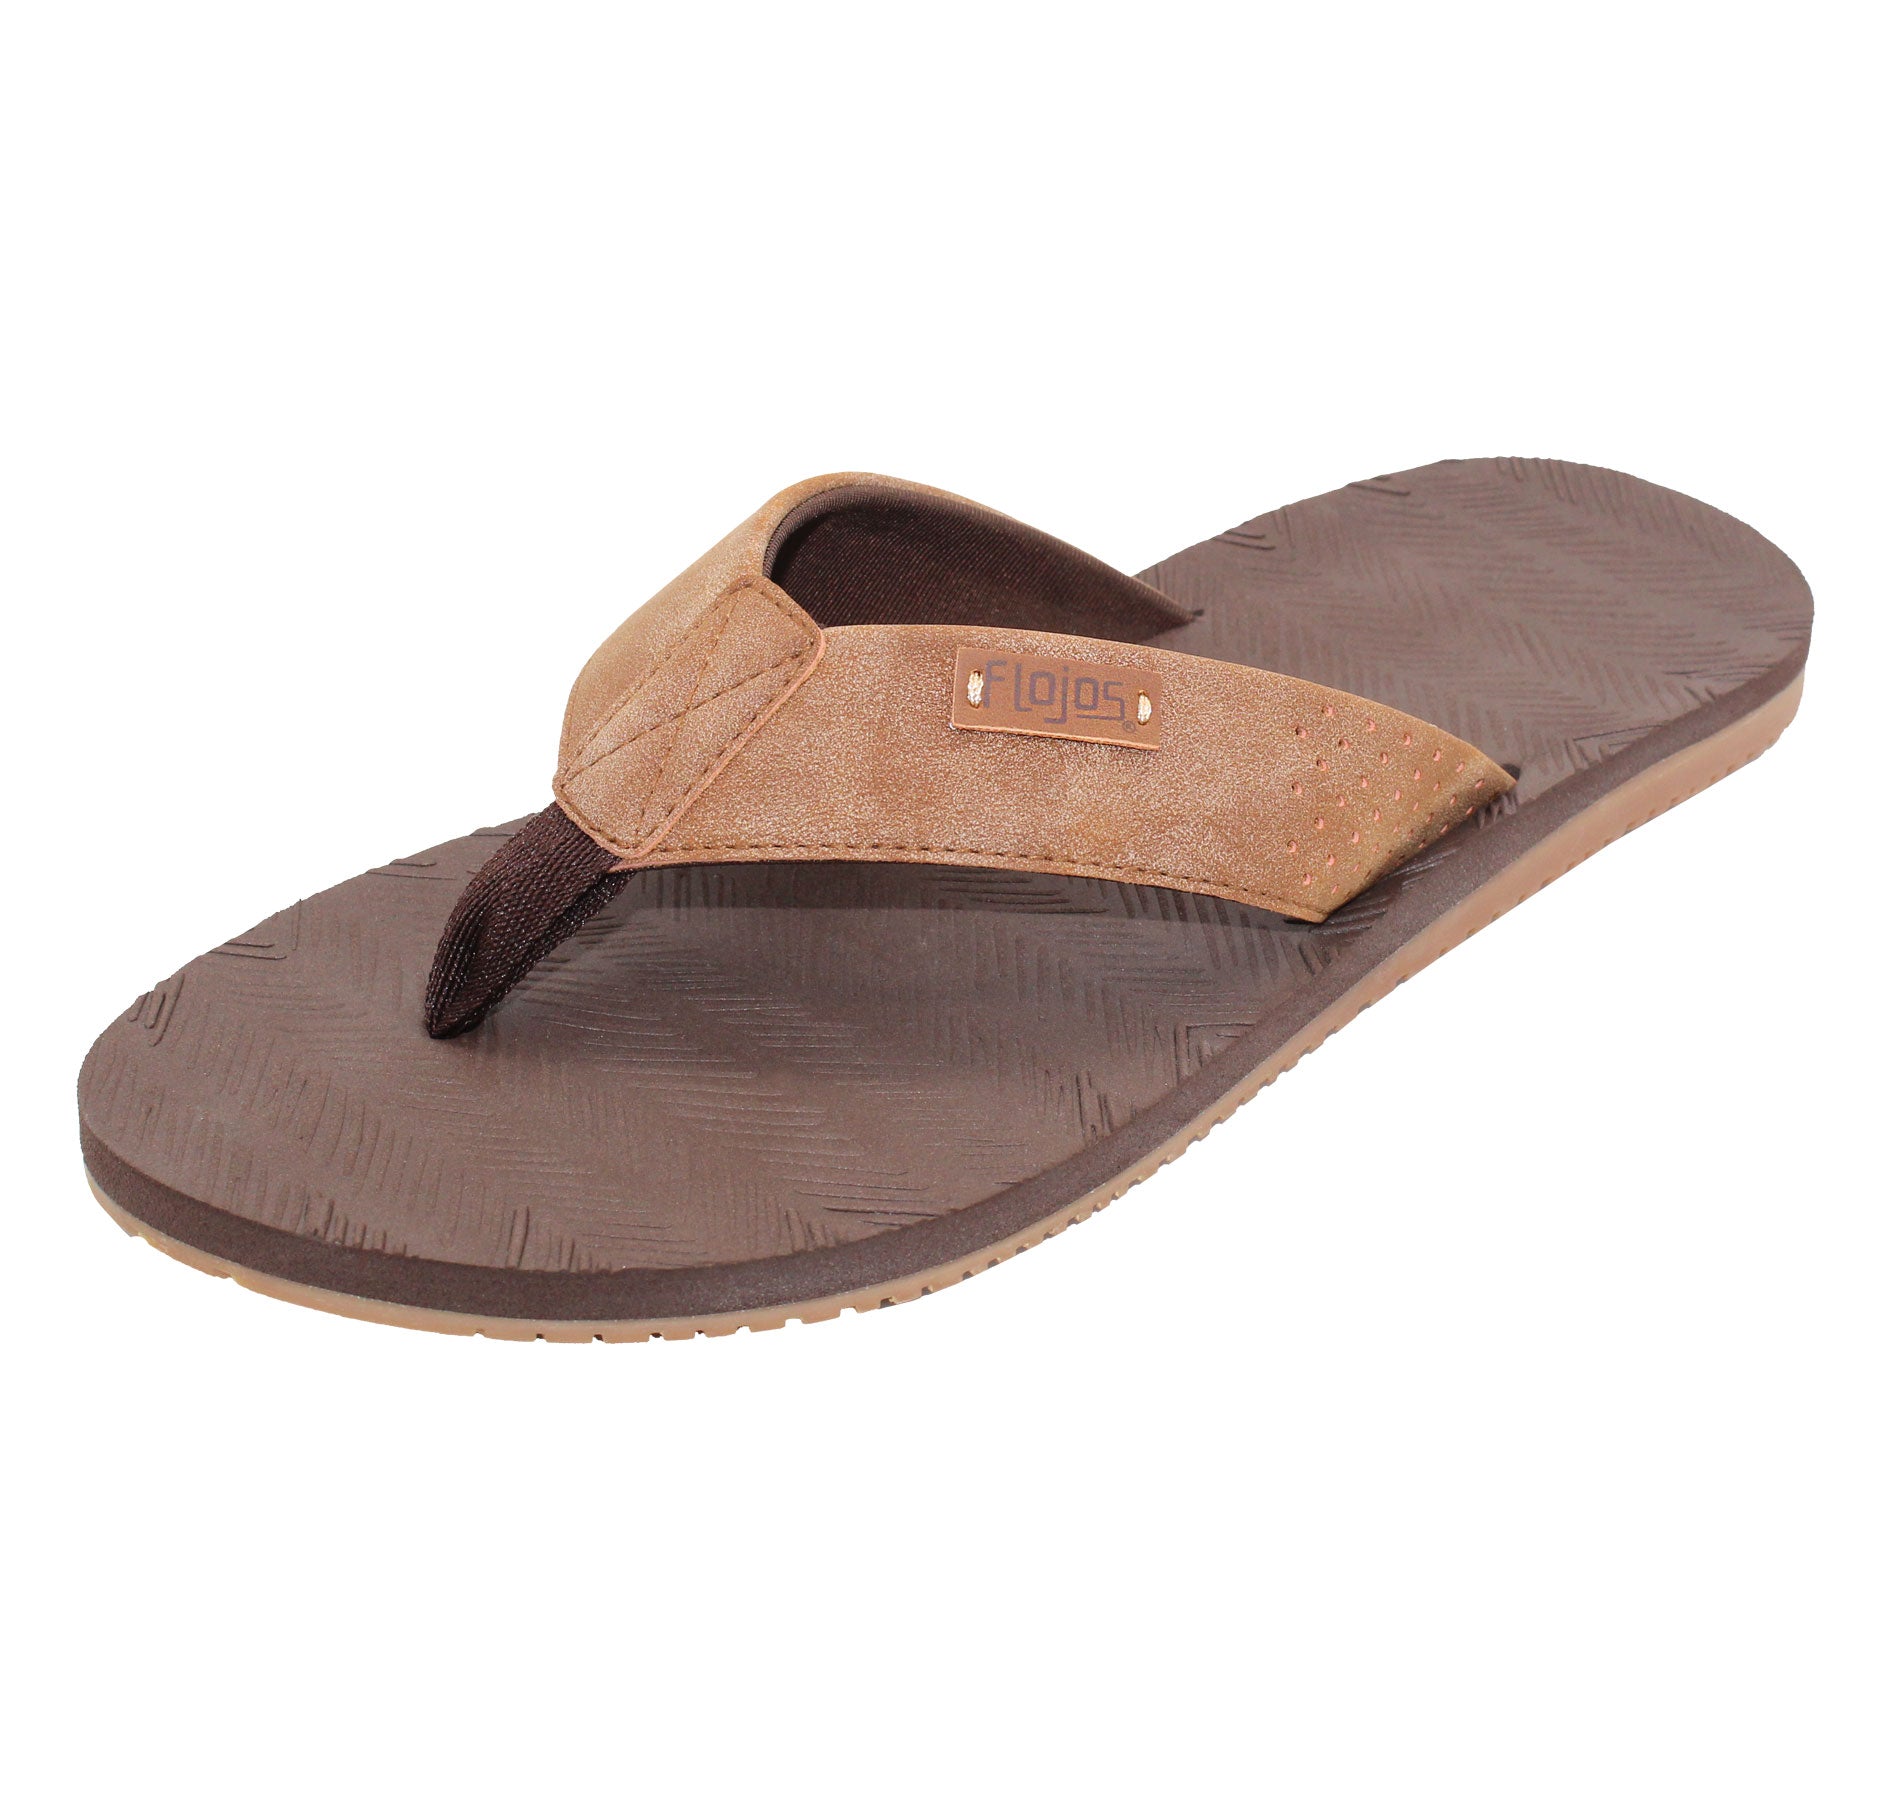 Fiji - Men's Sandal